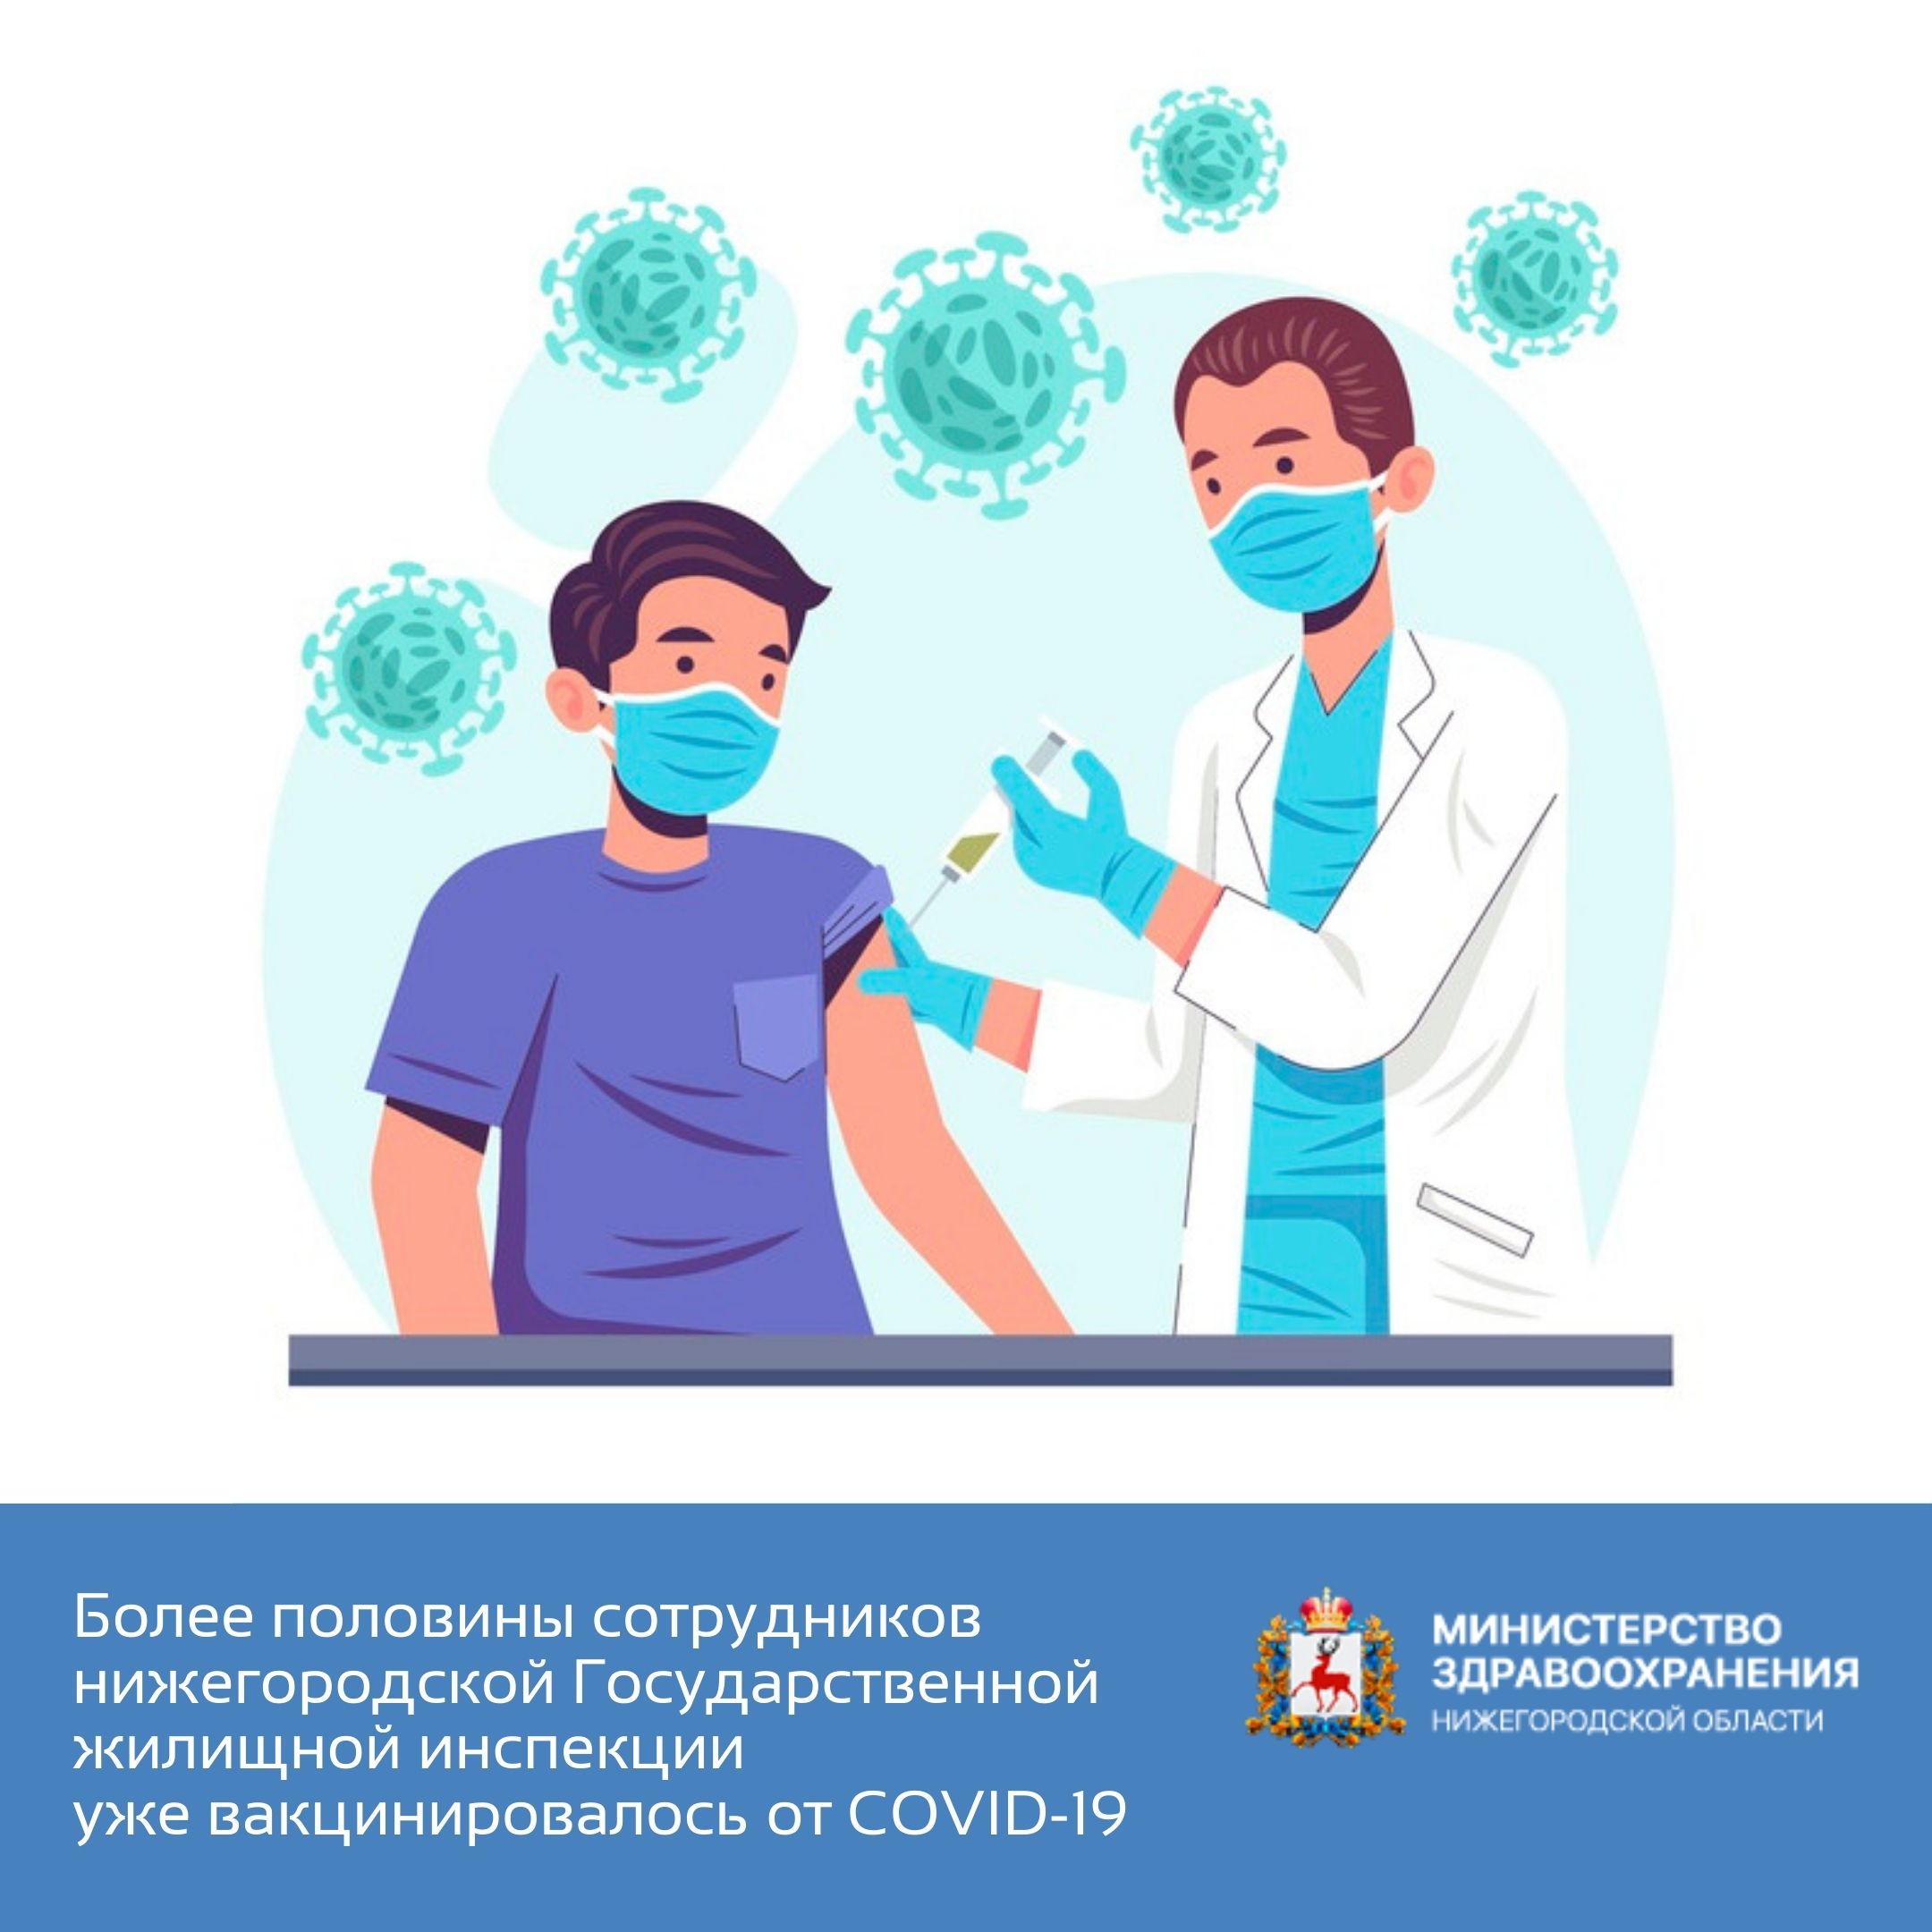 Более половины сотрудников нижегородской Государственной жилищной инспекции уже вакцинировалось от COVID-19